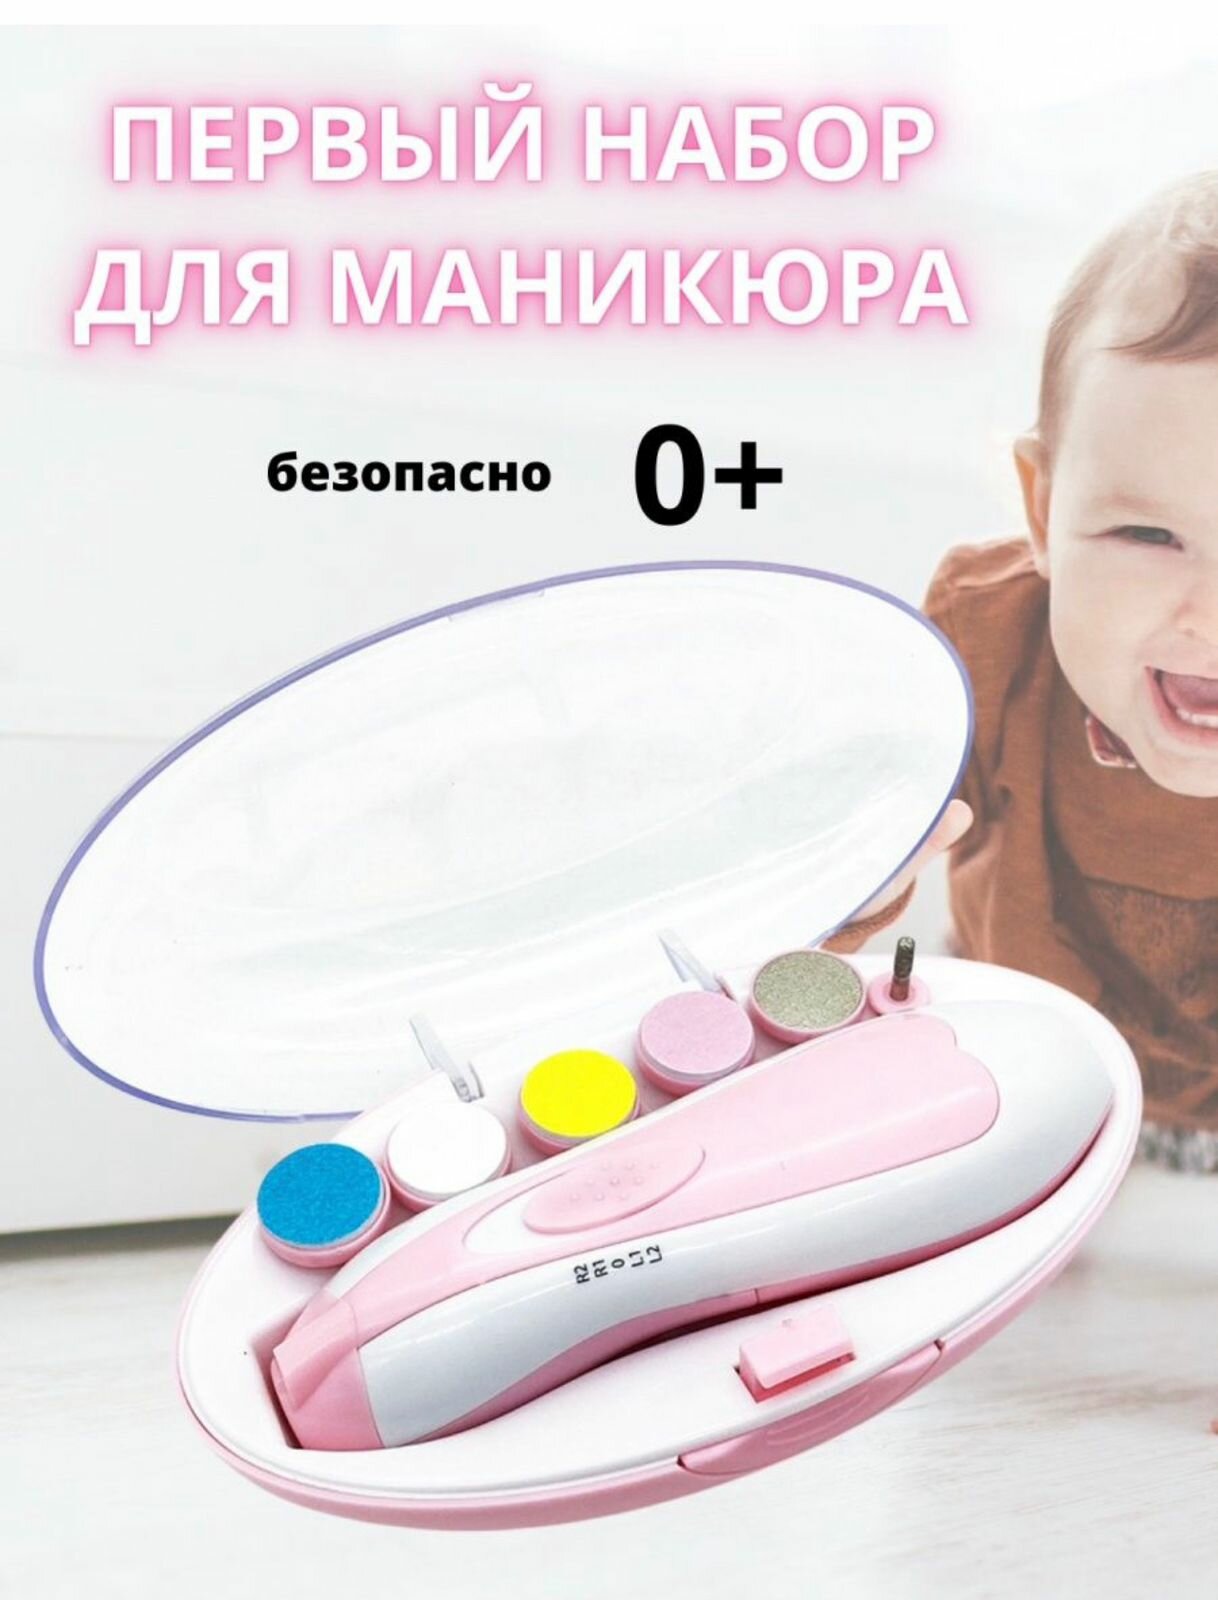 Детский триммер для ногтей, безопасная электрическая пилка для детей, набор для ногтей с 6 насадками и подсветкой